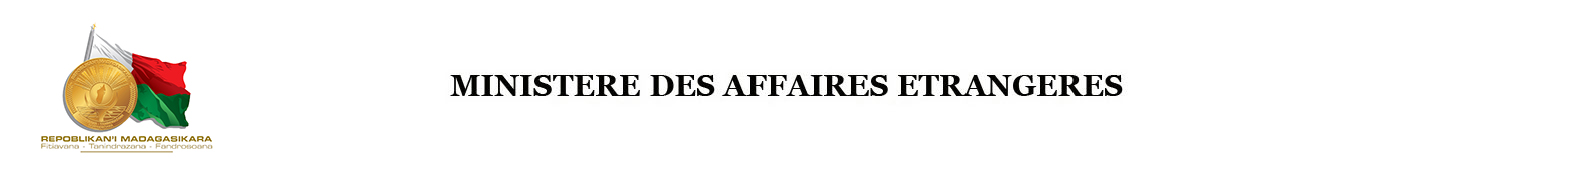 MINISTERE DES AFFAIRES ETRANGERES DE MADAGASCAR